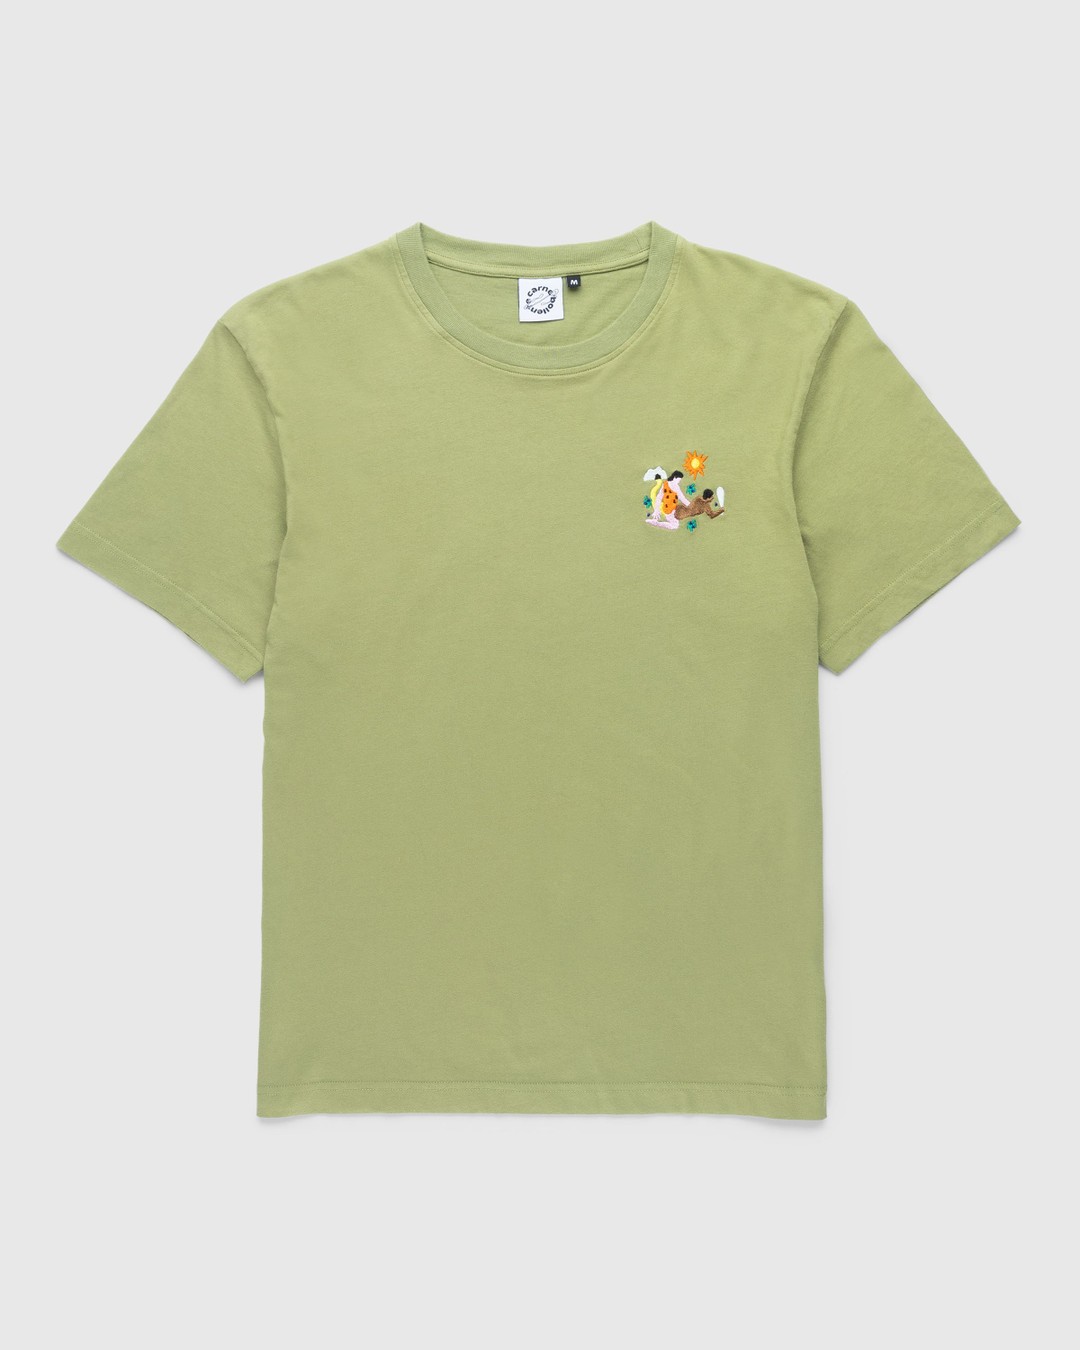 Carne Bollente – Yabba-Dabba-Do Me T-Shirt Khaki - Tops - Green - Image 1